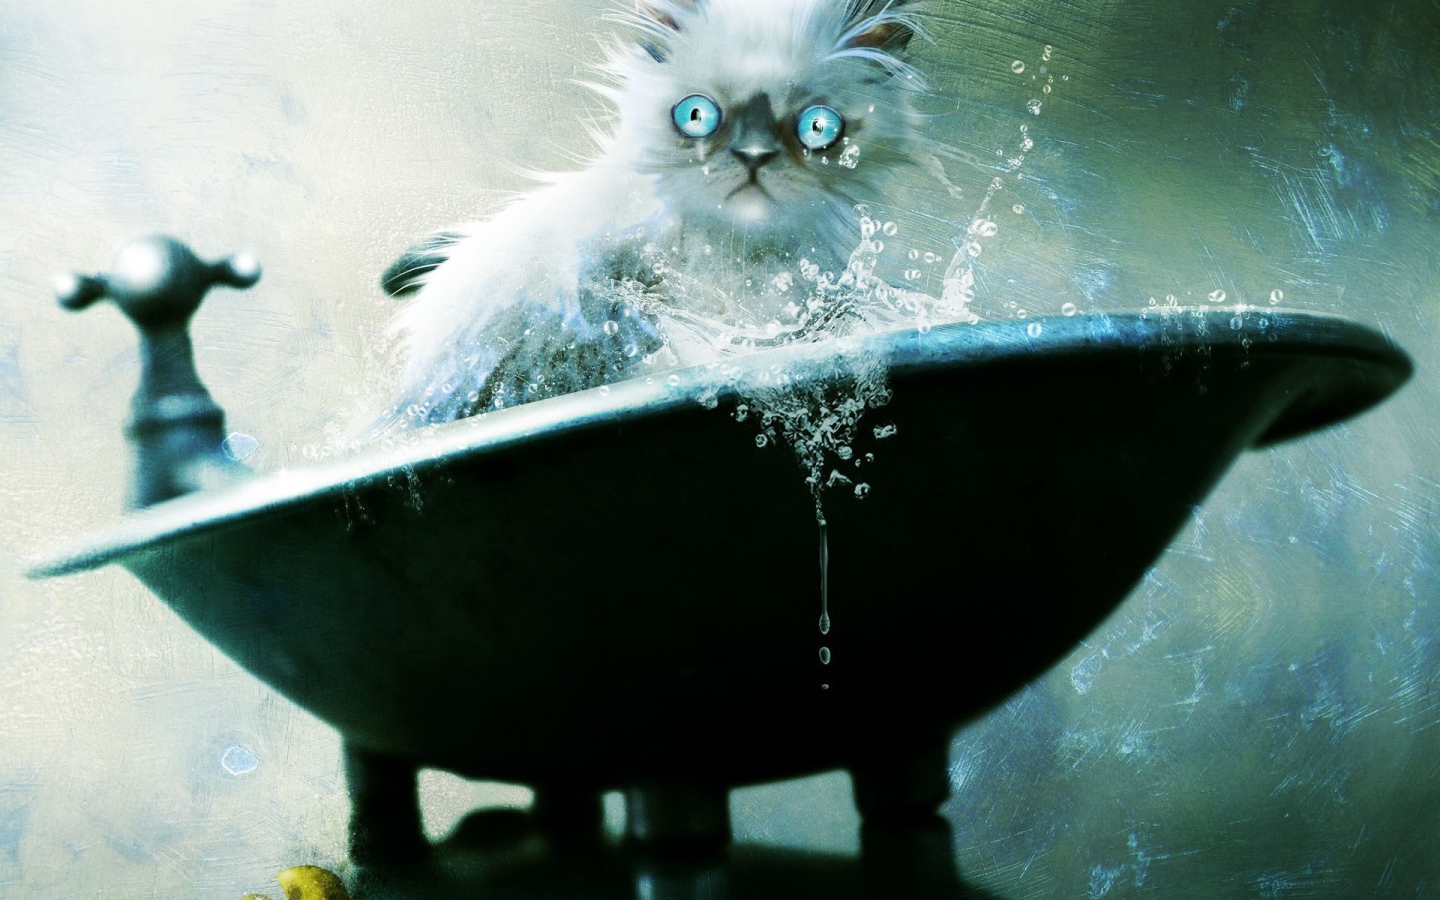 Голубоглазый кот не рад купанию